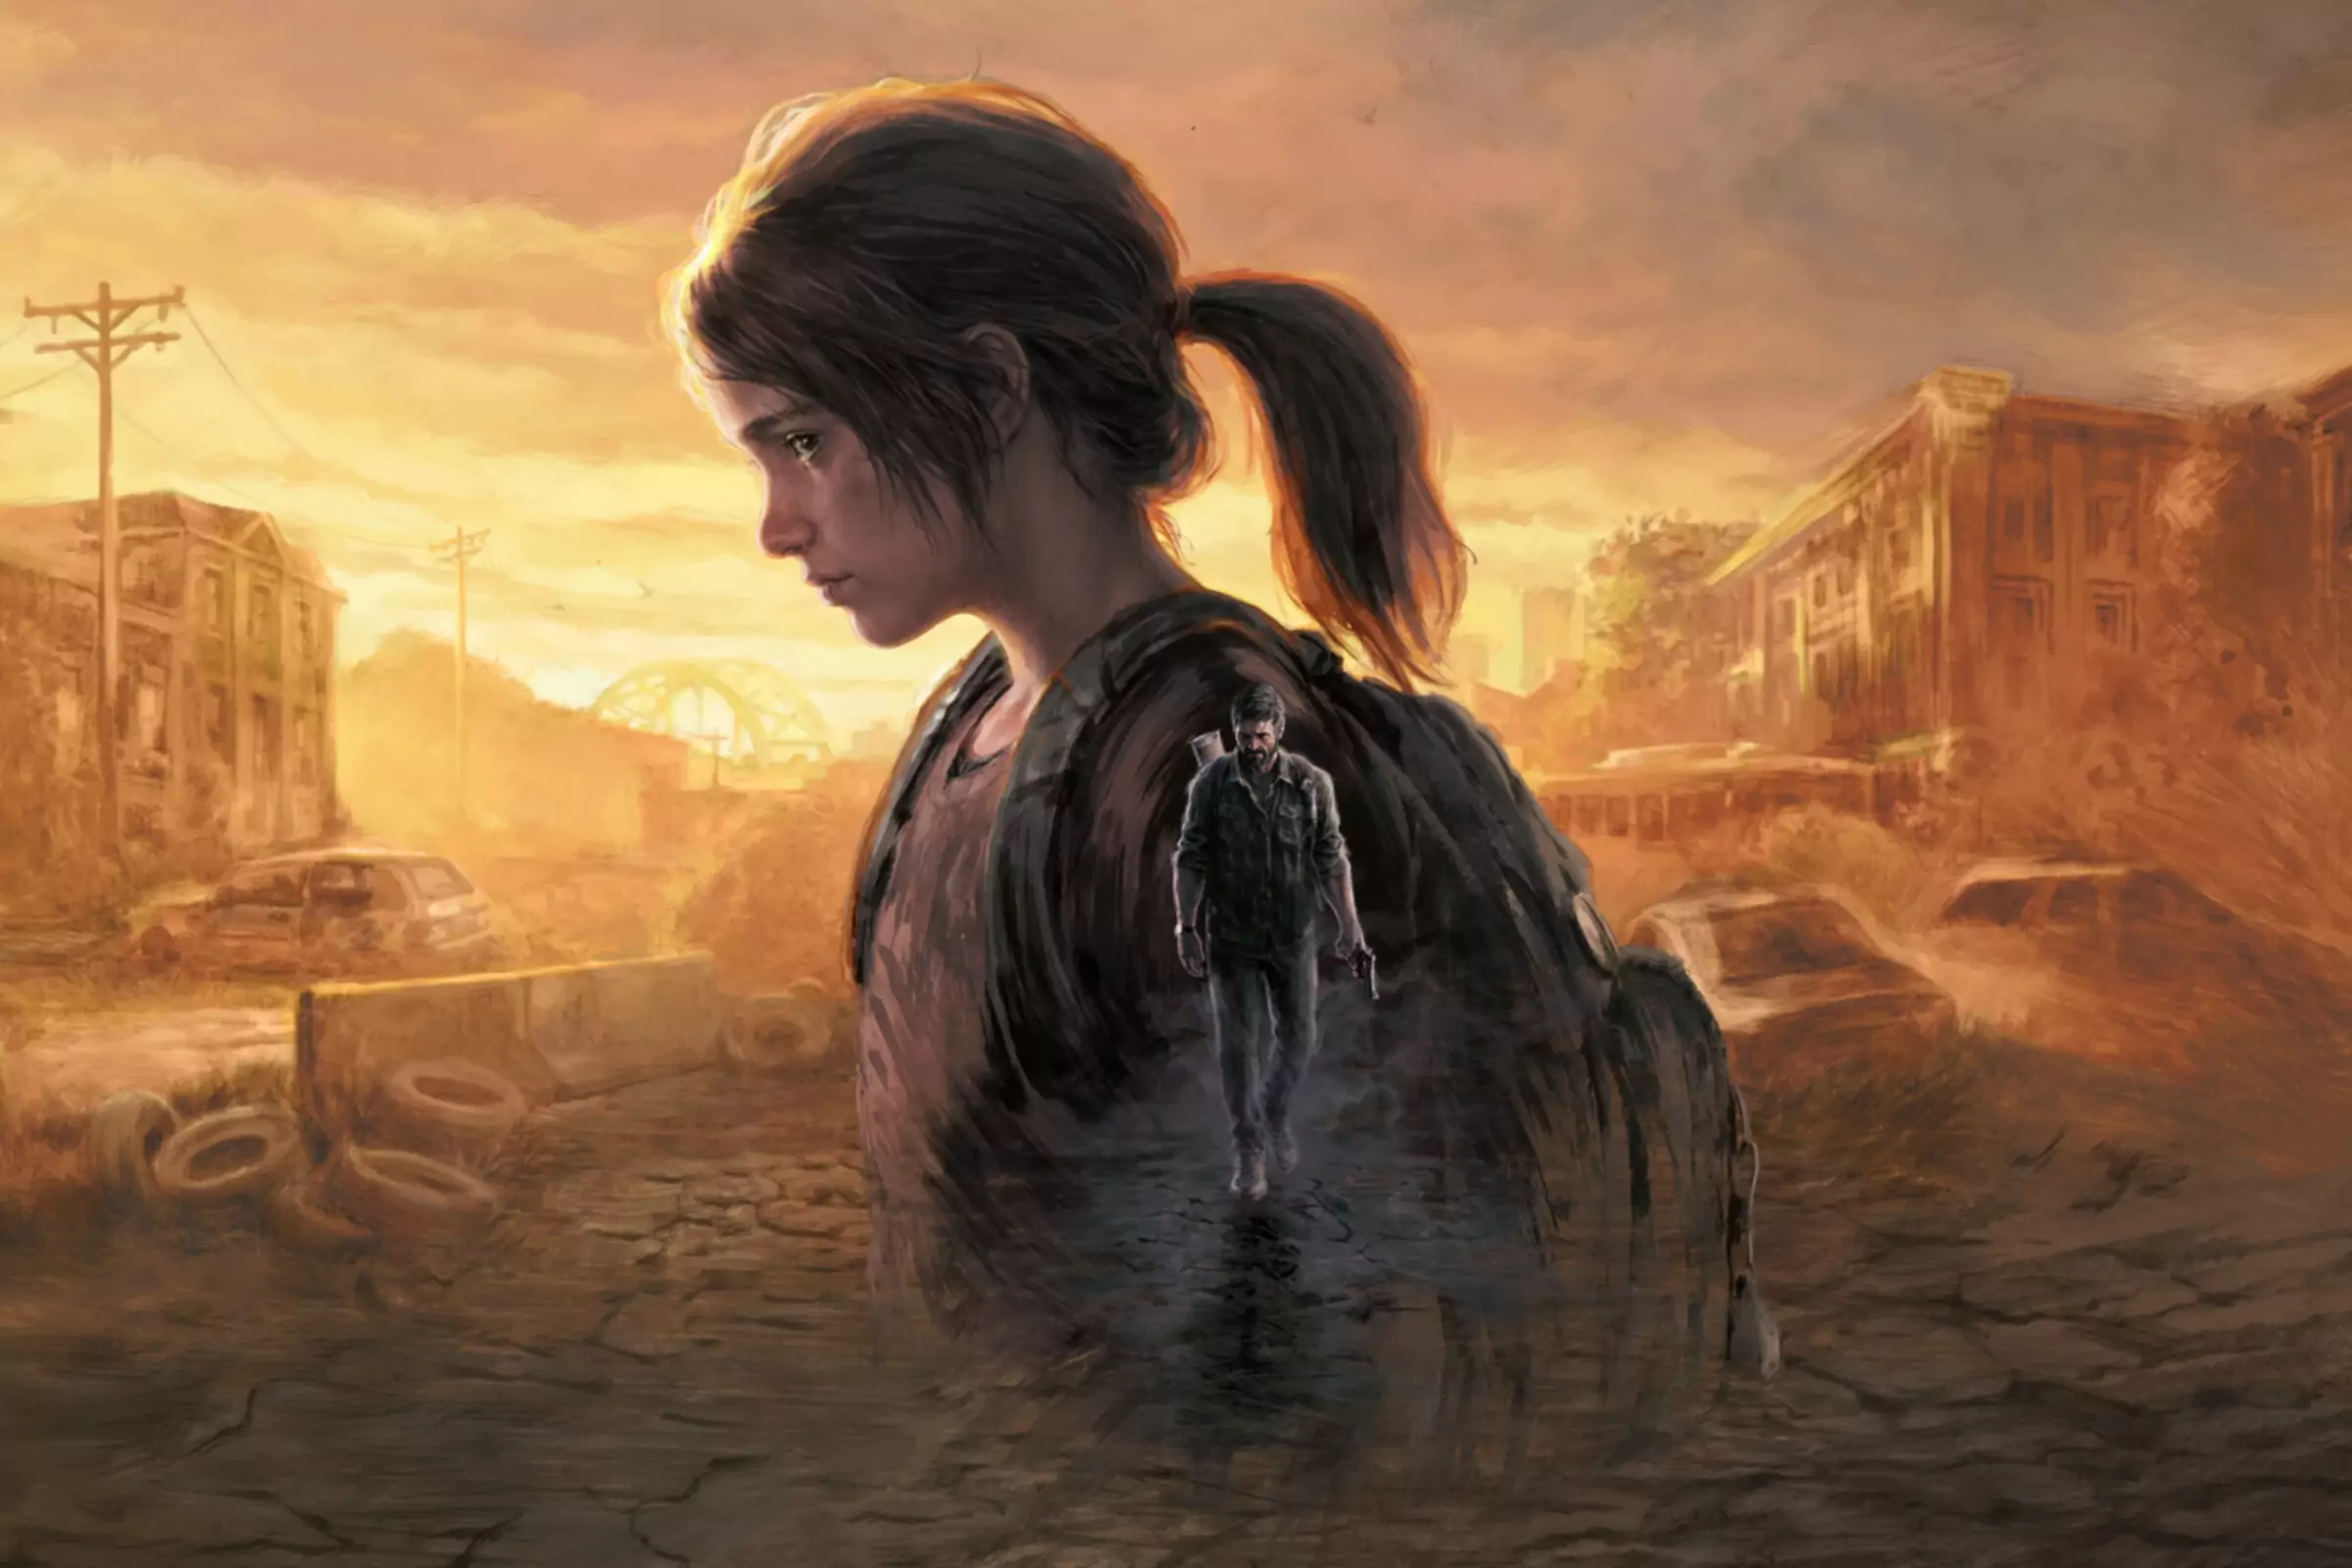 Ilustrație pentru The Last of Us care prezintă un personaj mare suprapus peste un personaj mai mic care se plimbă printr-un...